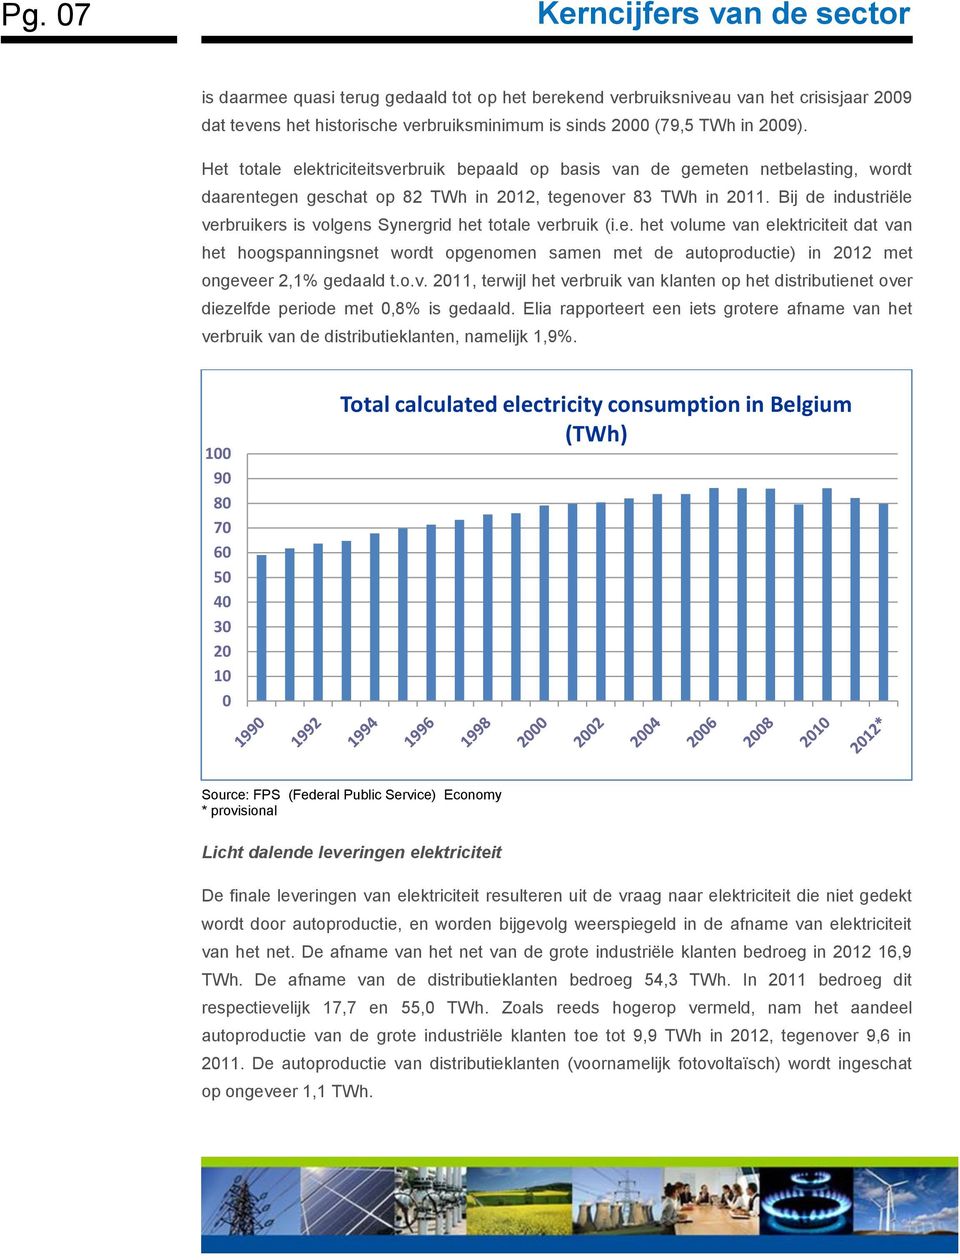 Bij de industriële verbruikers is volgens Synergrid het totale verbruik (i.e. het volume van elektriciteit dat van het hoogspanningsnet wordt opgenomen samen met de autoproductie) in 2012 met ongeveer 2,1% gedaald t.